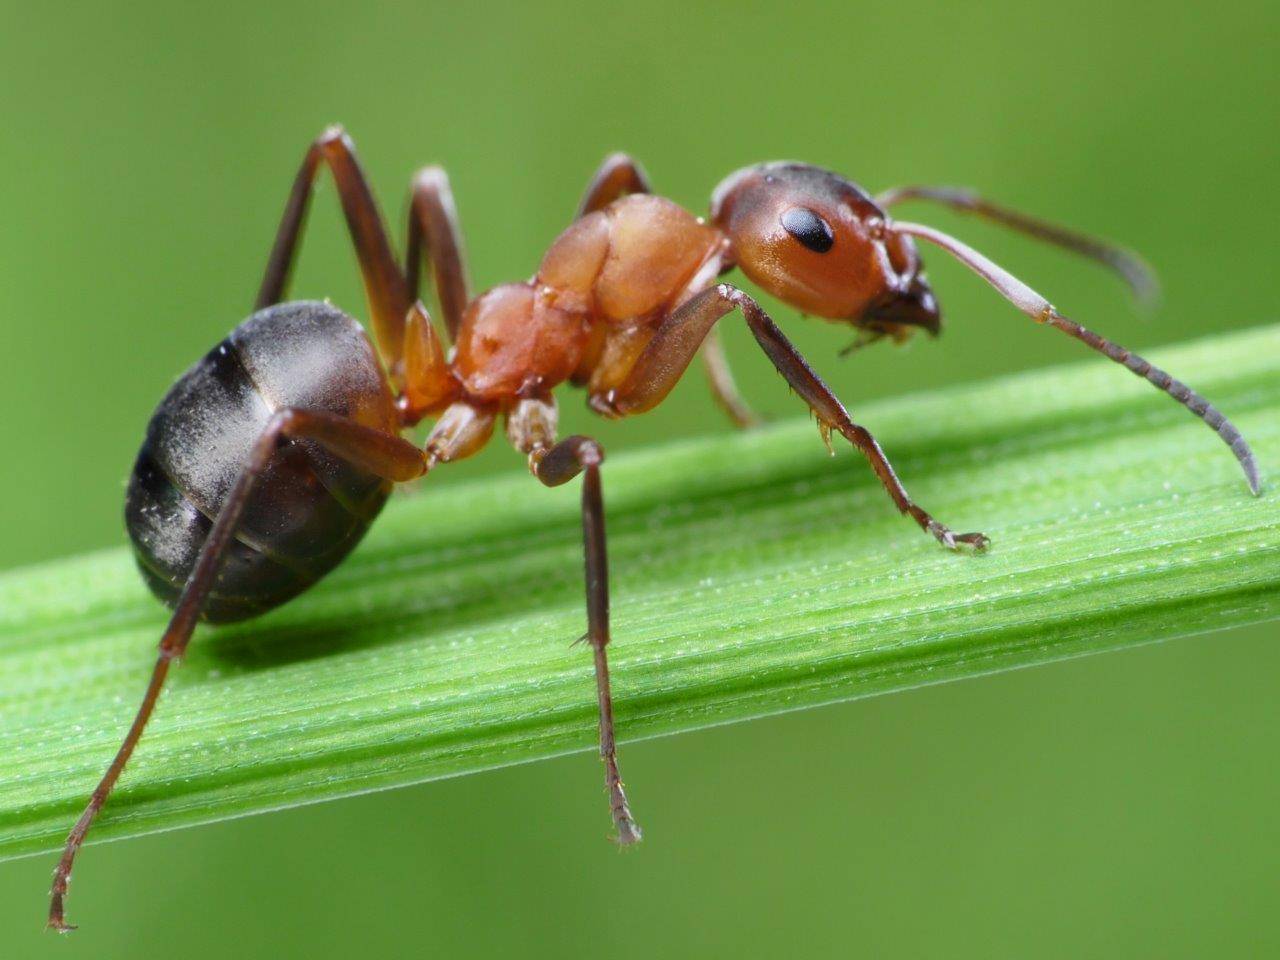 روغن مورچه برای نوزاد | روغن مورچه اصل | روغن مورچه روجا | روغن مورچه طلا | روغن مورچه برای چی خوبه | روغن مورچه برای چیست | روغن مورچه چیست